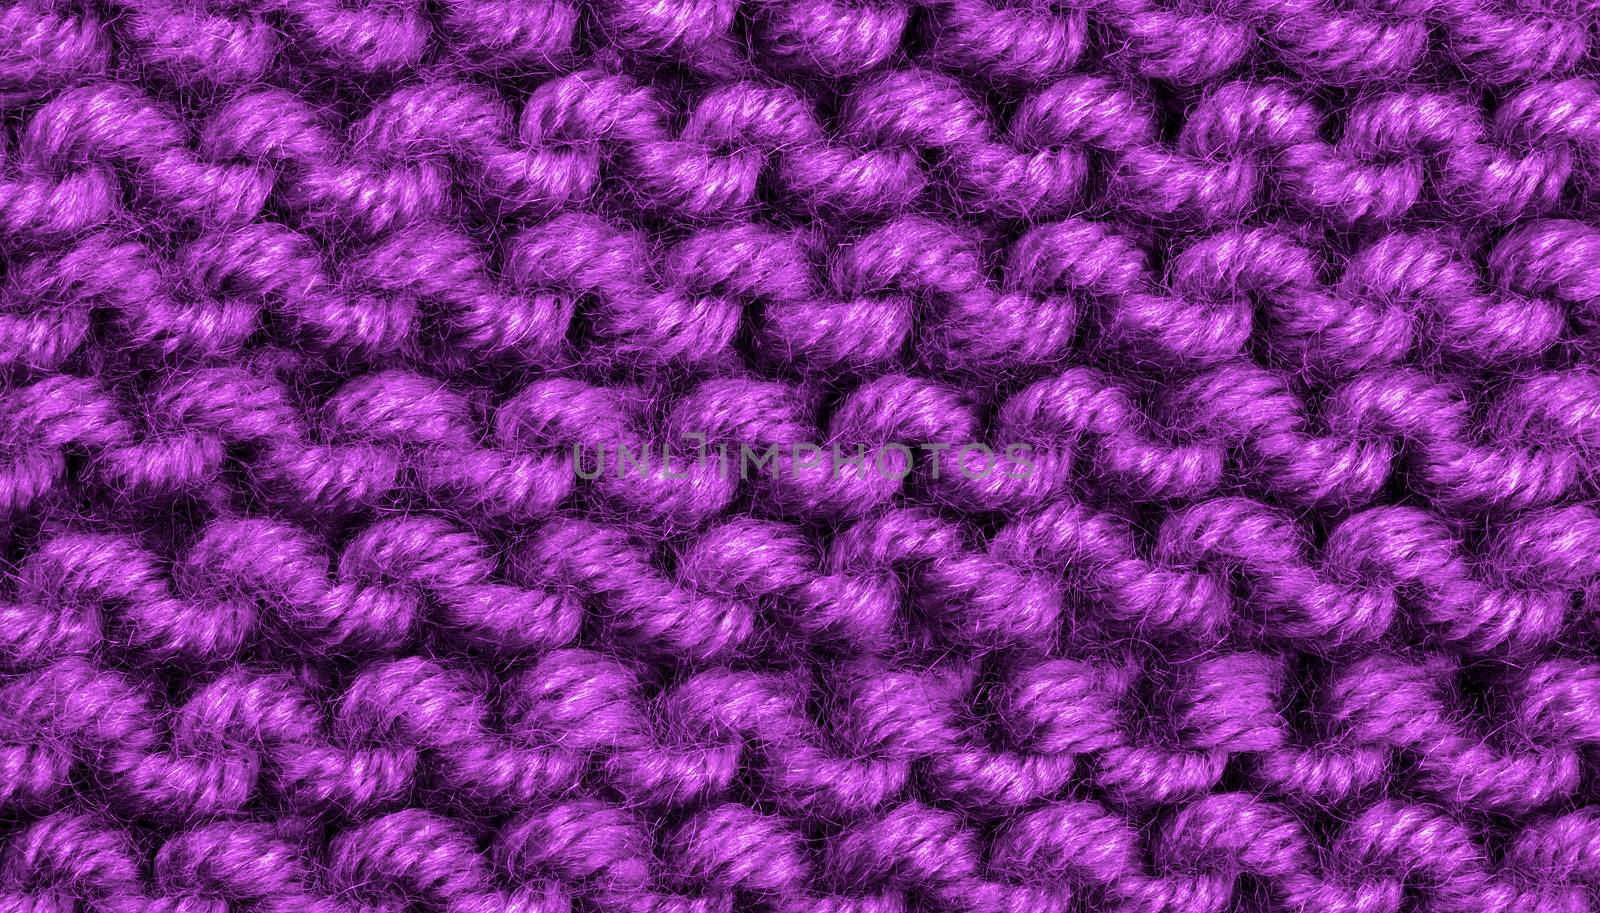 Woven Wool Background by zhekos